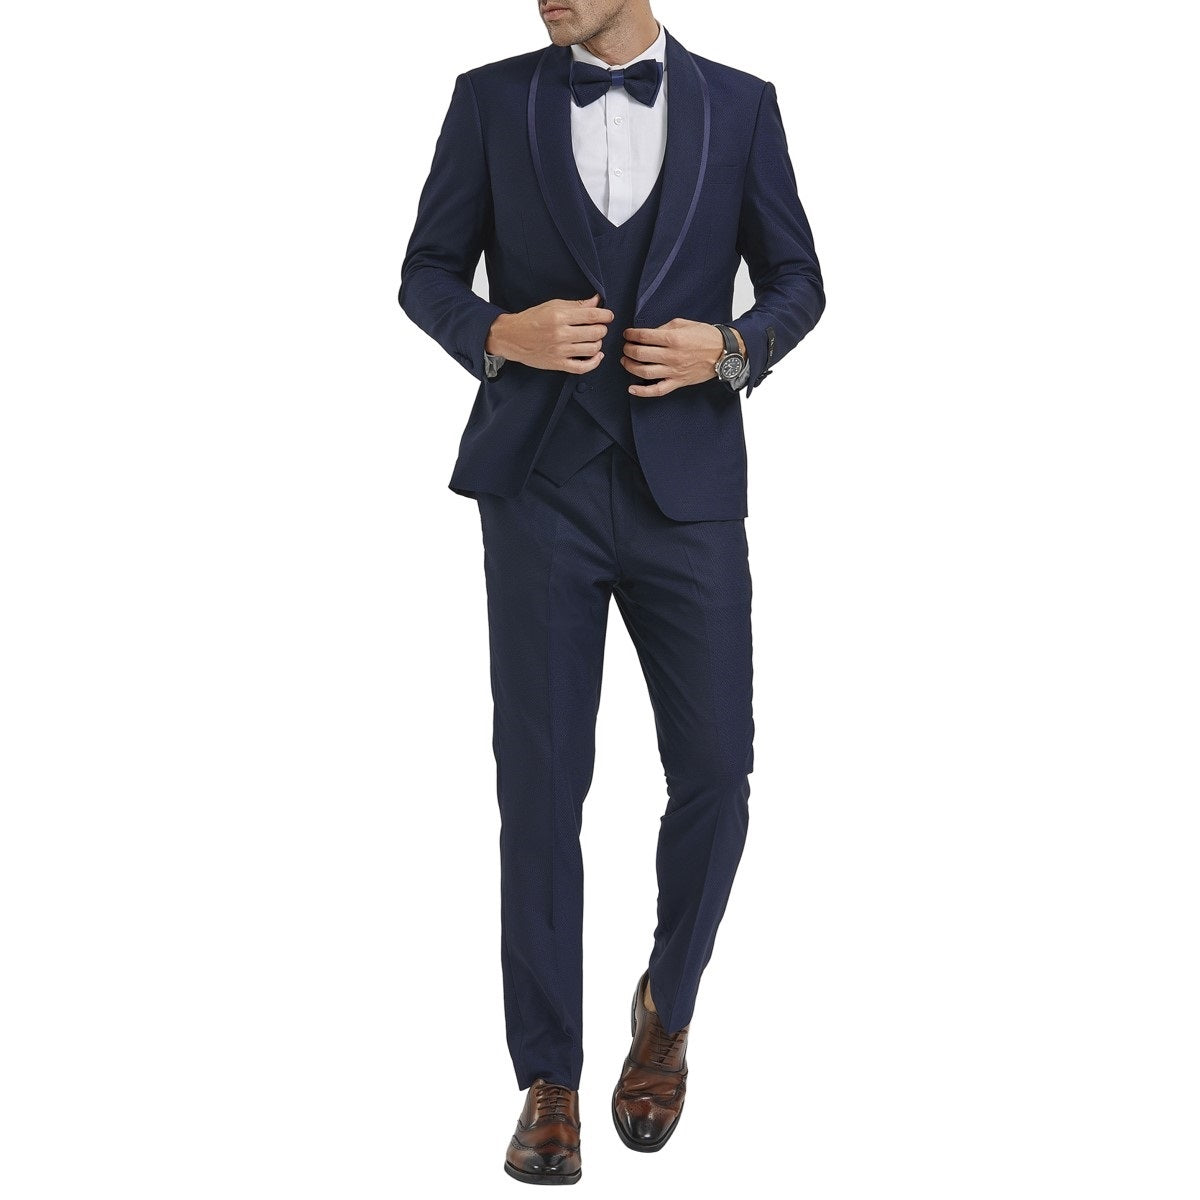 Traje Formal para Hombre TA-M352SK-02 - Formal Suit for Men